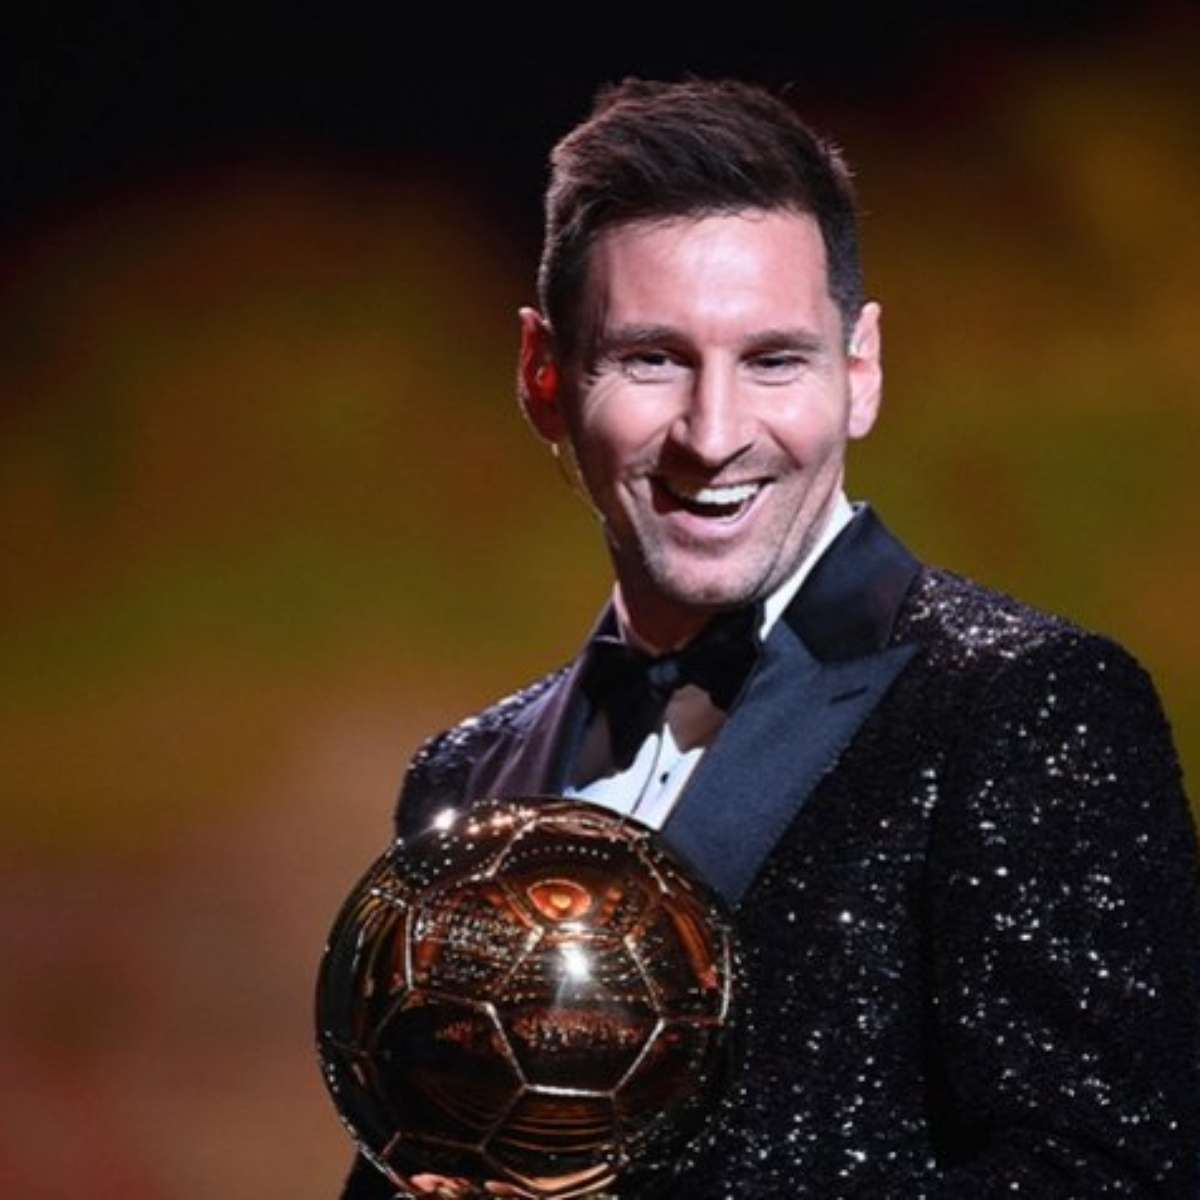 Messi supera Pelé e é eleito melhor jogador do mundo pela 8ª vez - PP